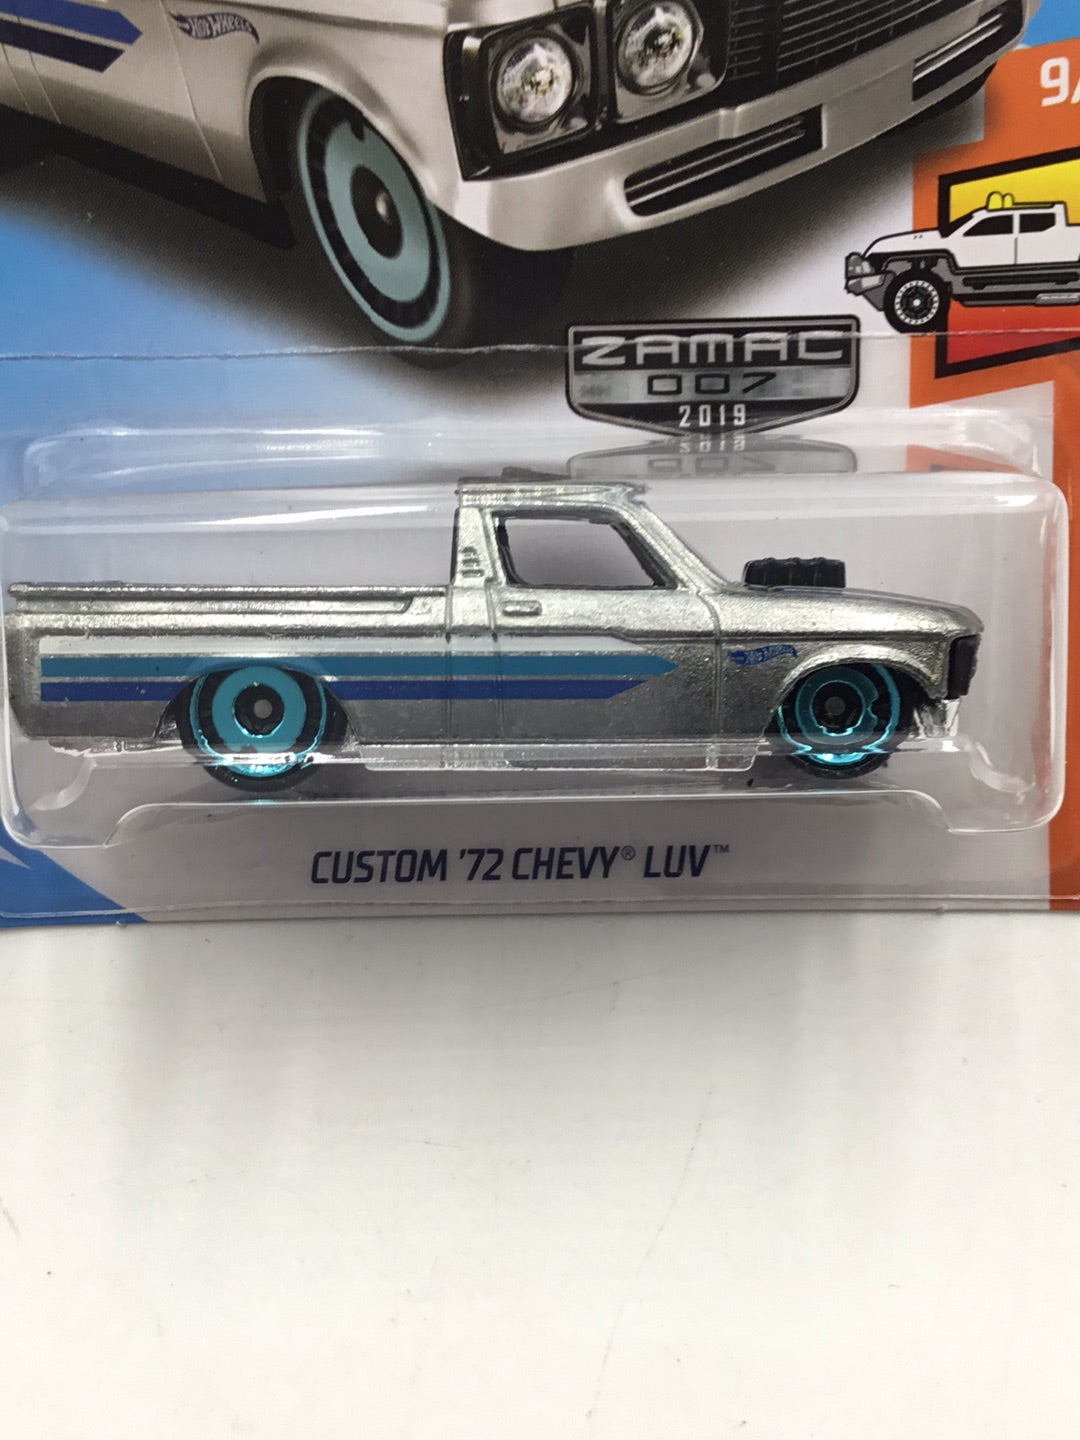 2019 Hot wheels #30 Custom 72 Chevy Luv Zamac #7 CC8